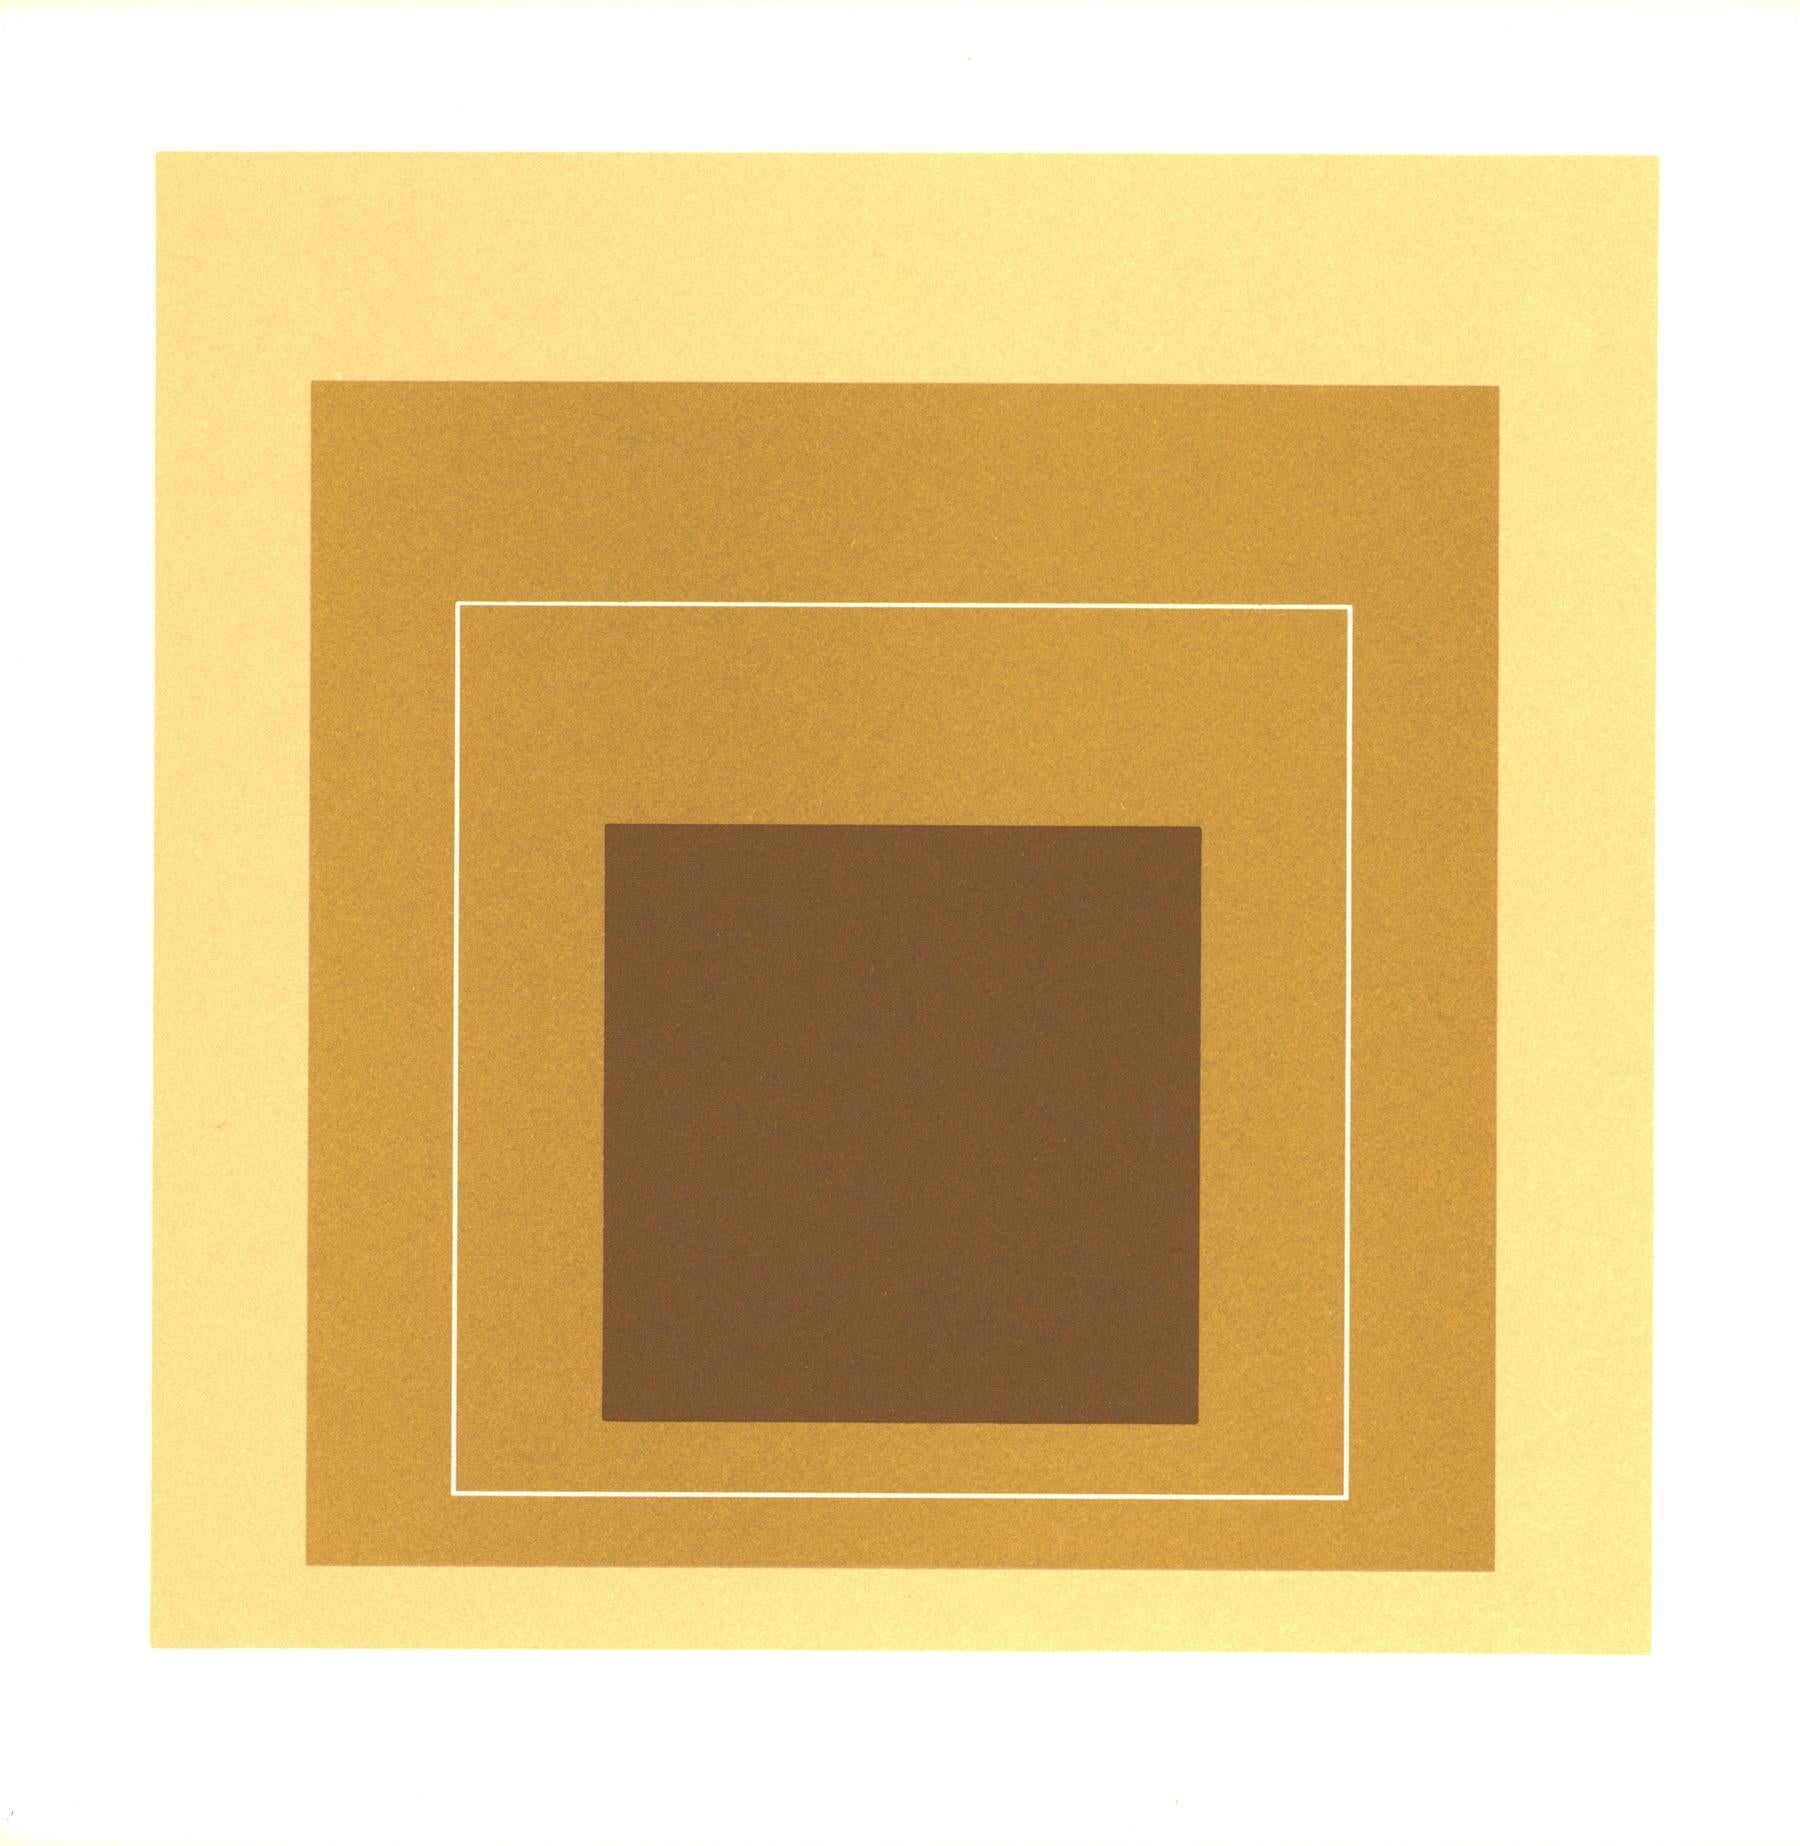 Josef Albers Weiße Linienquadrate:
Ein Satz von 6 lithografischen Beilagen (jeweils ca. 7,25 x 7,25 Zoll groß),  veröffentlicht als Teil des Ausstellungskatalogs von 1966: Josef Albers : White Line Squares - eine Wanderausstellung, die 1966 vom Los